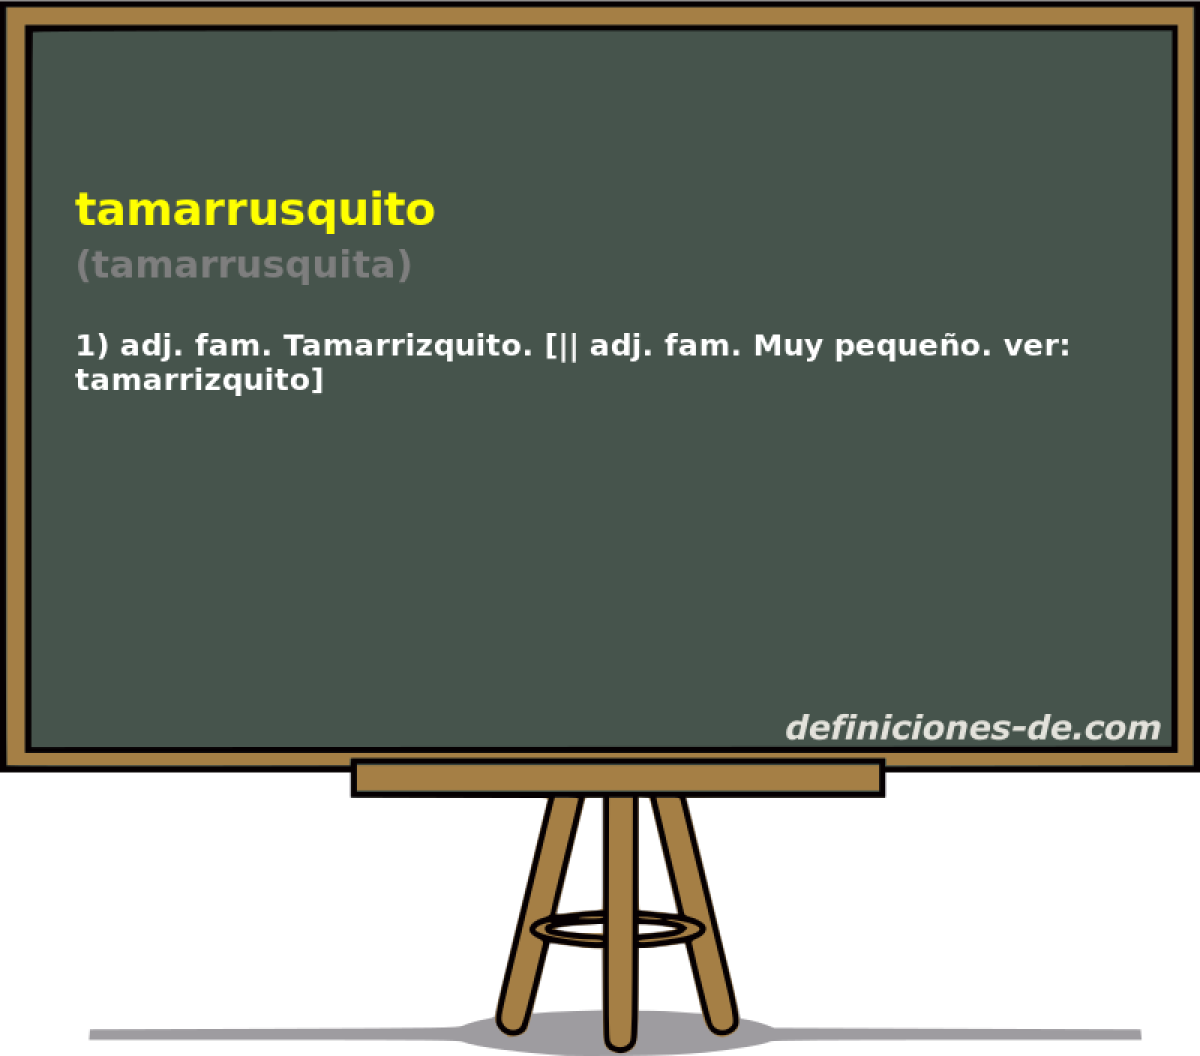 tamarrusquito (tamarrusquita)